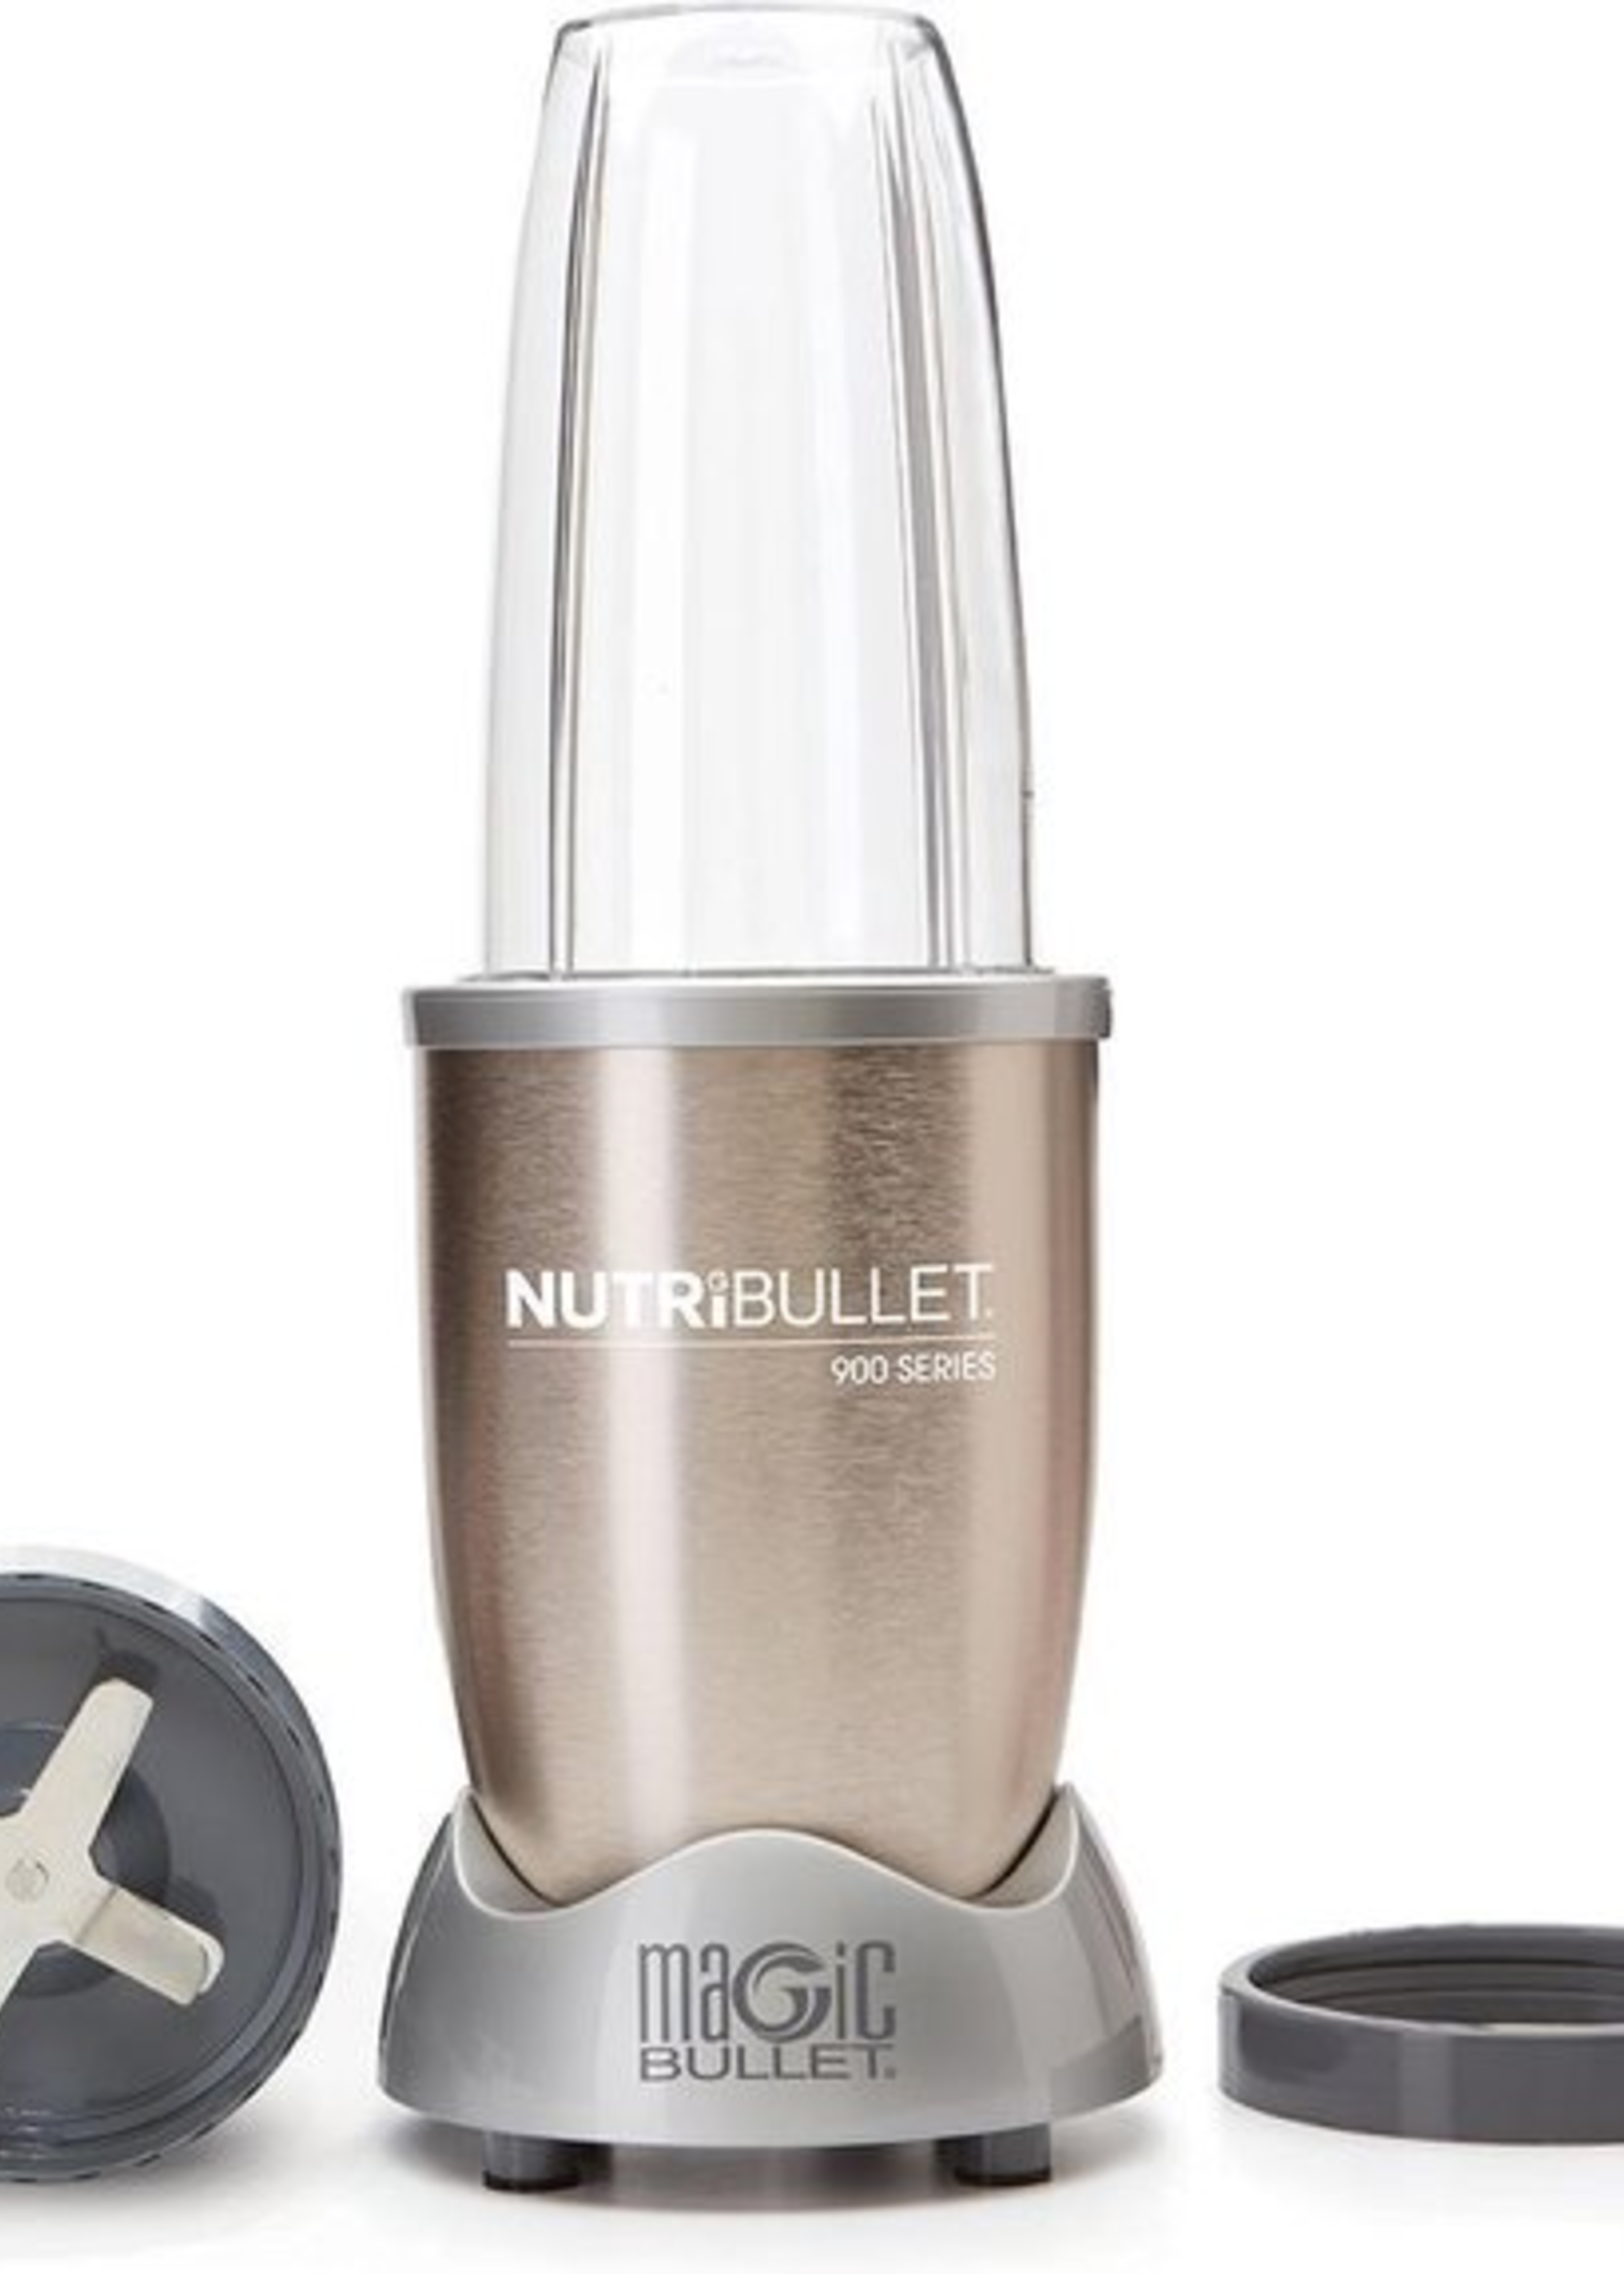 NutriBullet Pro 5-delig - Blender